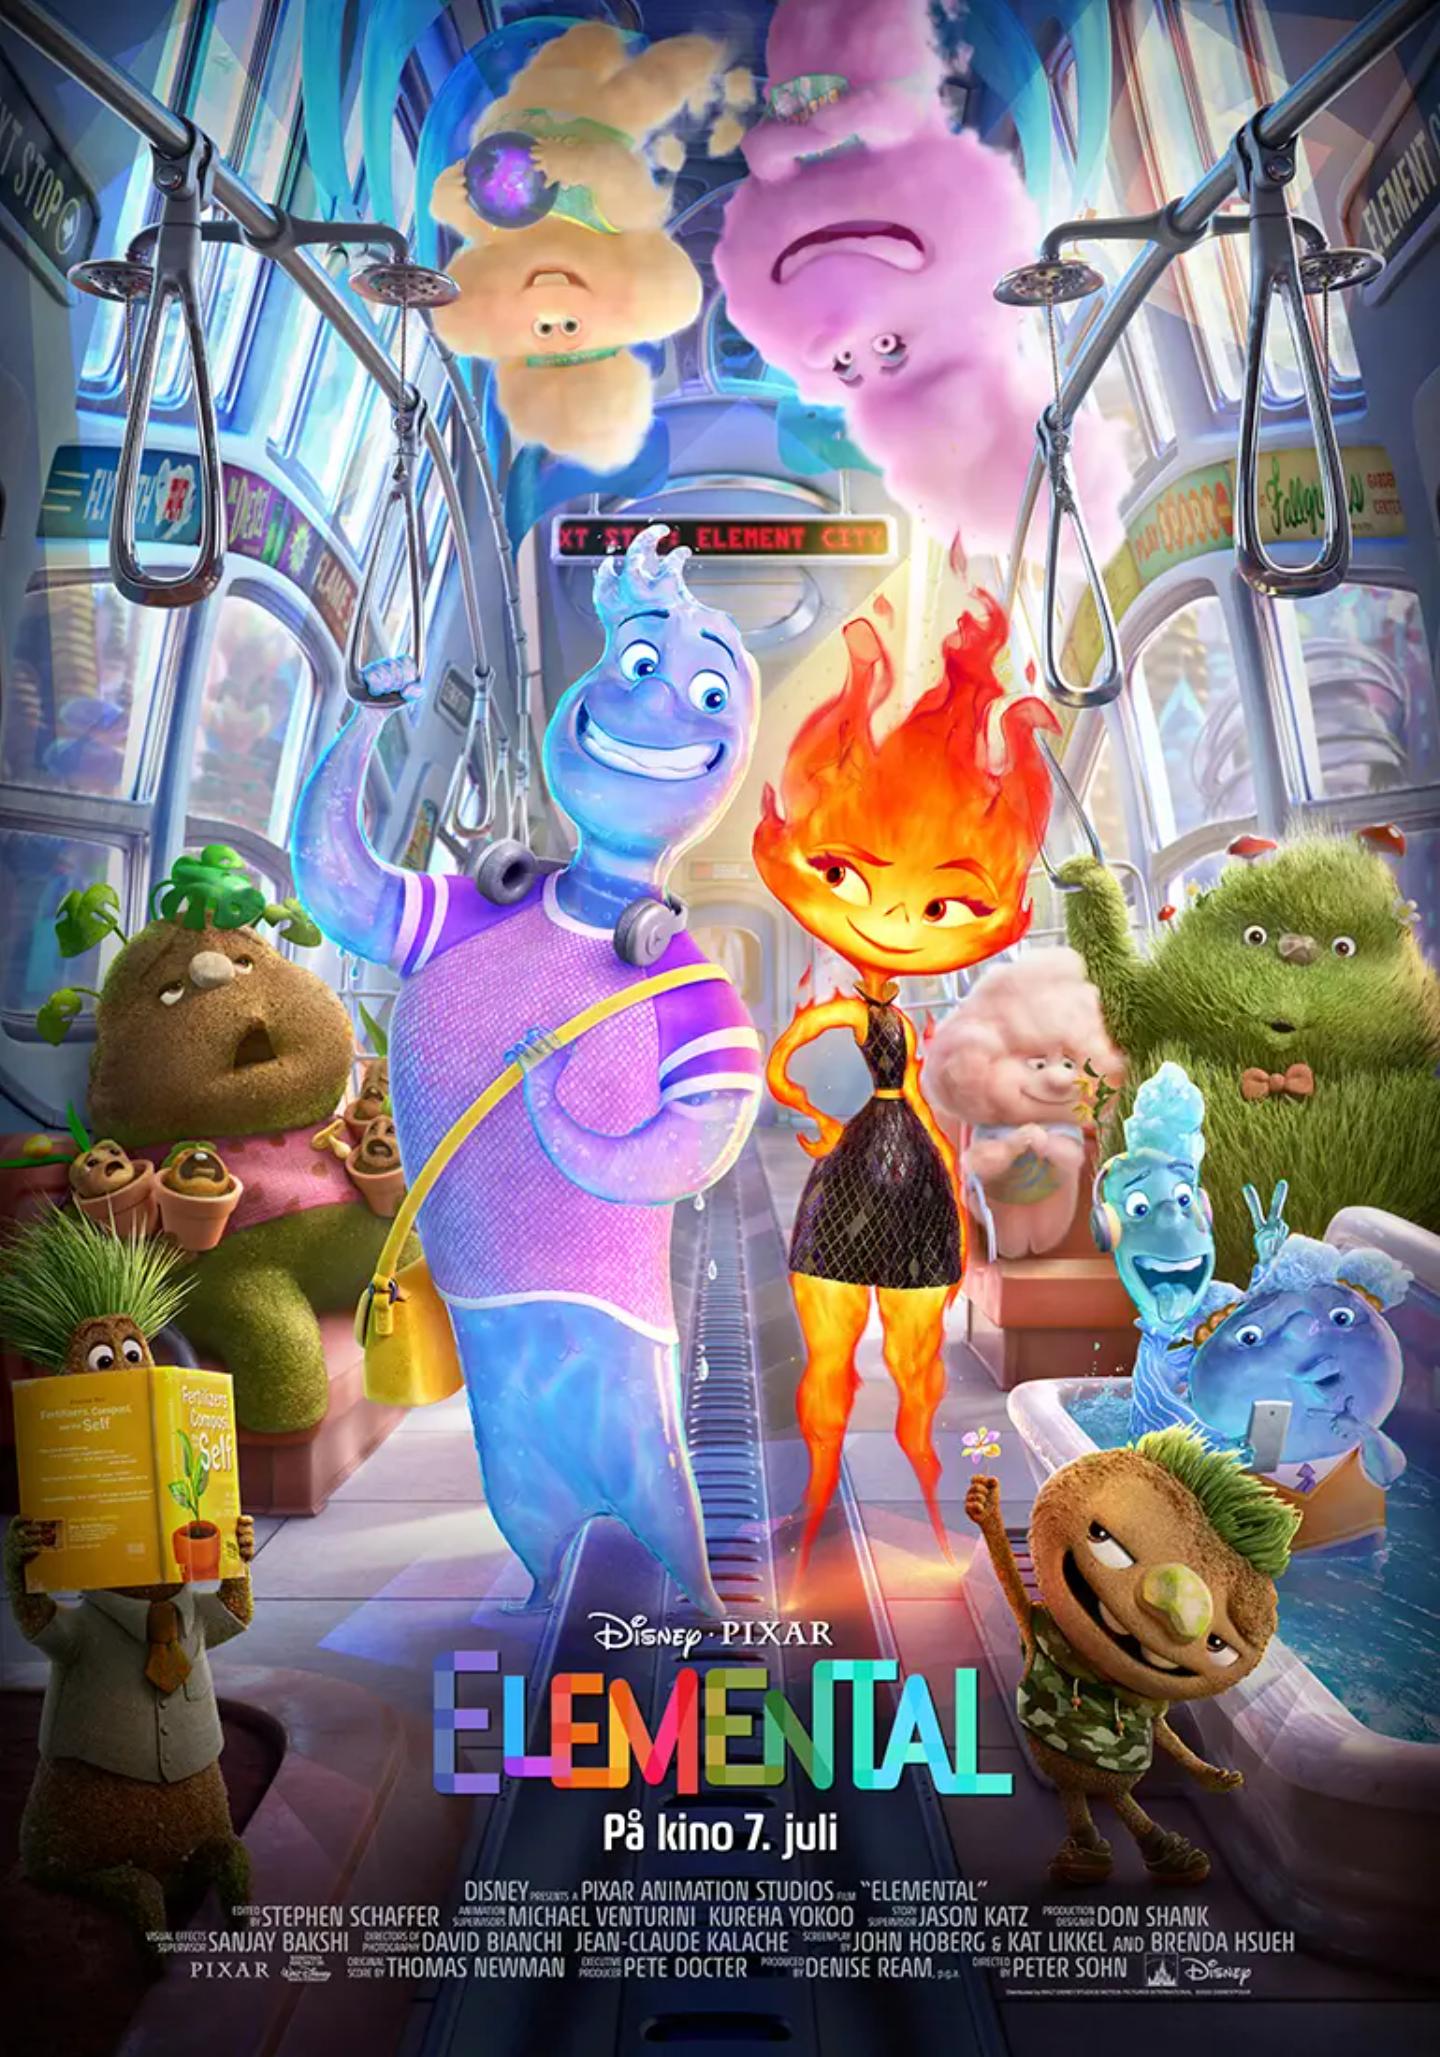 Plakat for 'Elemental'